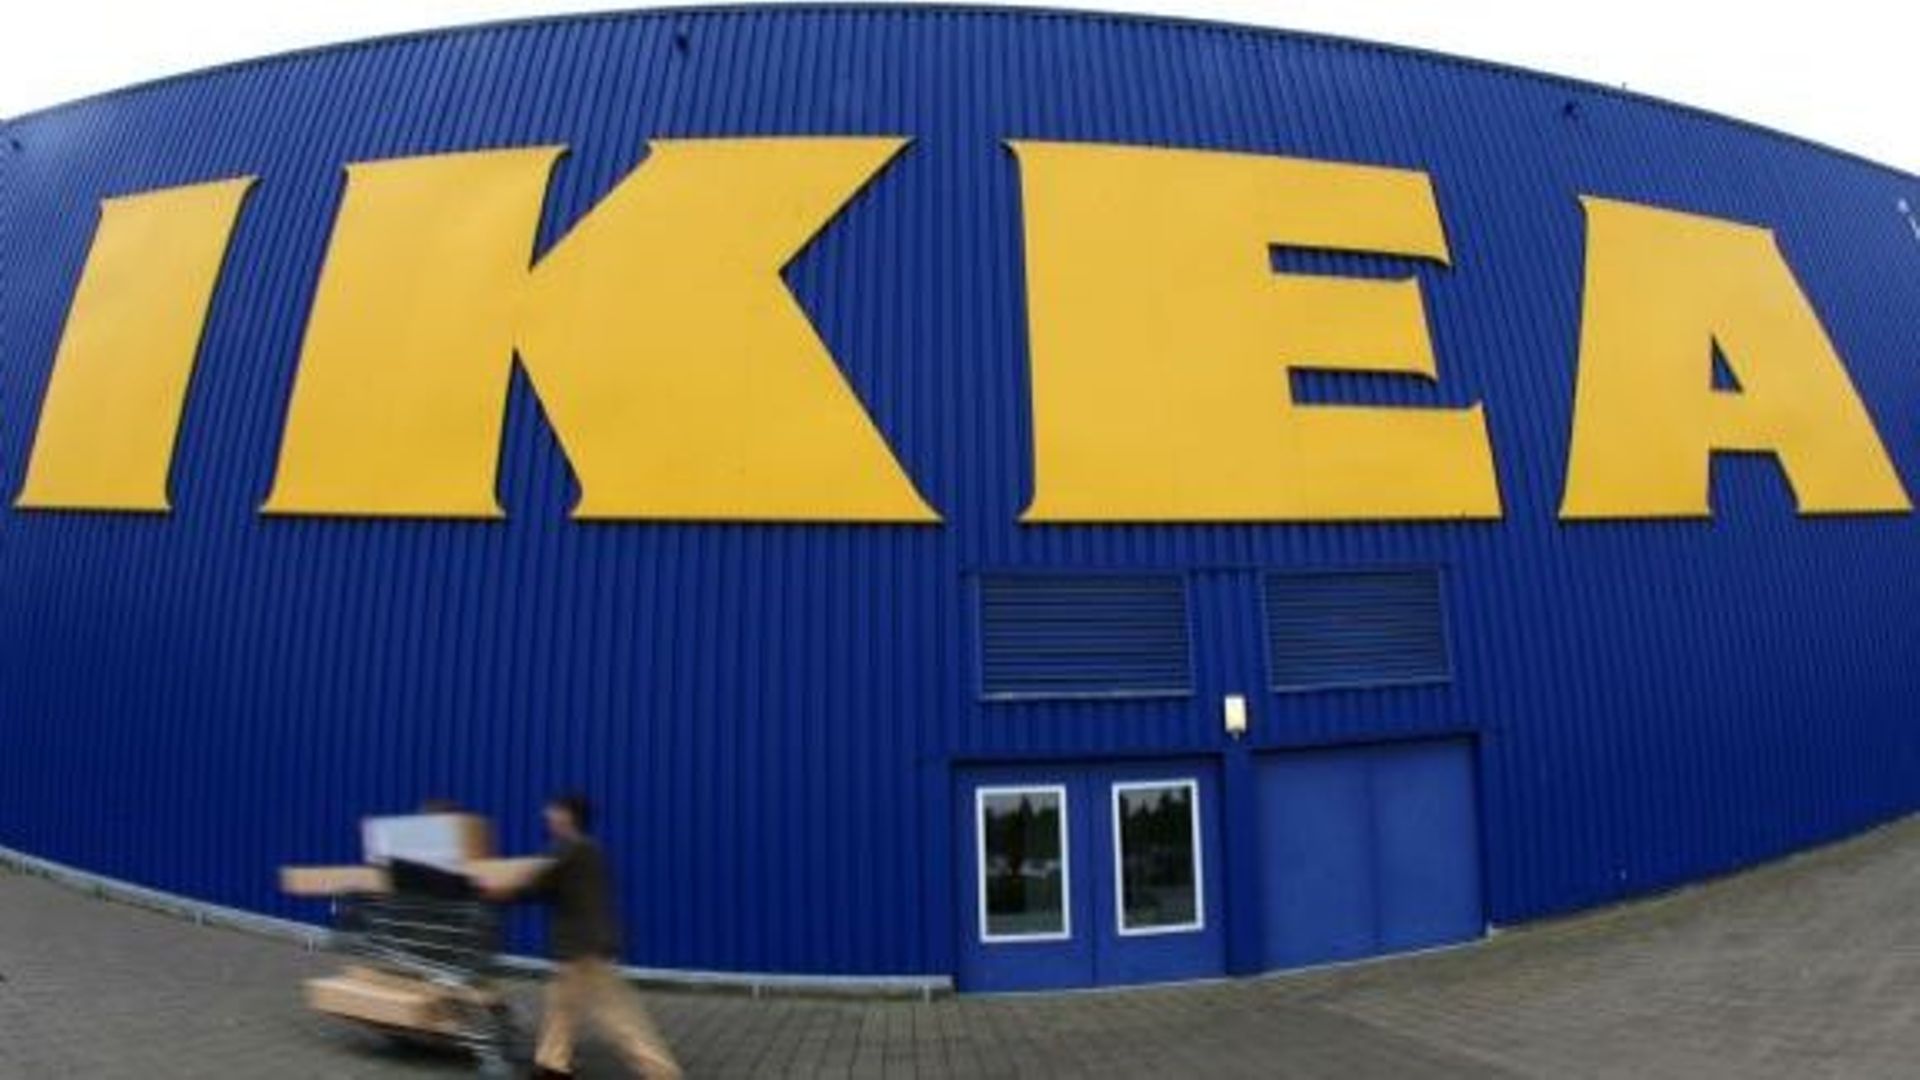 Ikea accusé d’espionnage sur ses employés et clients	